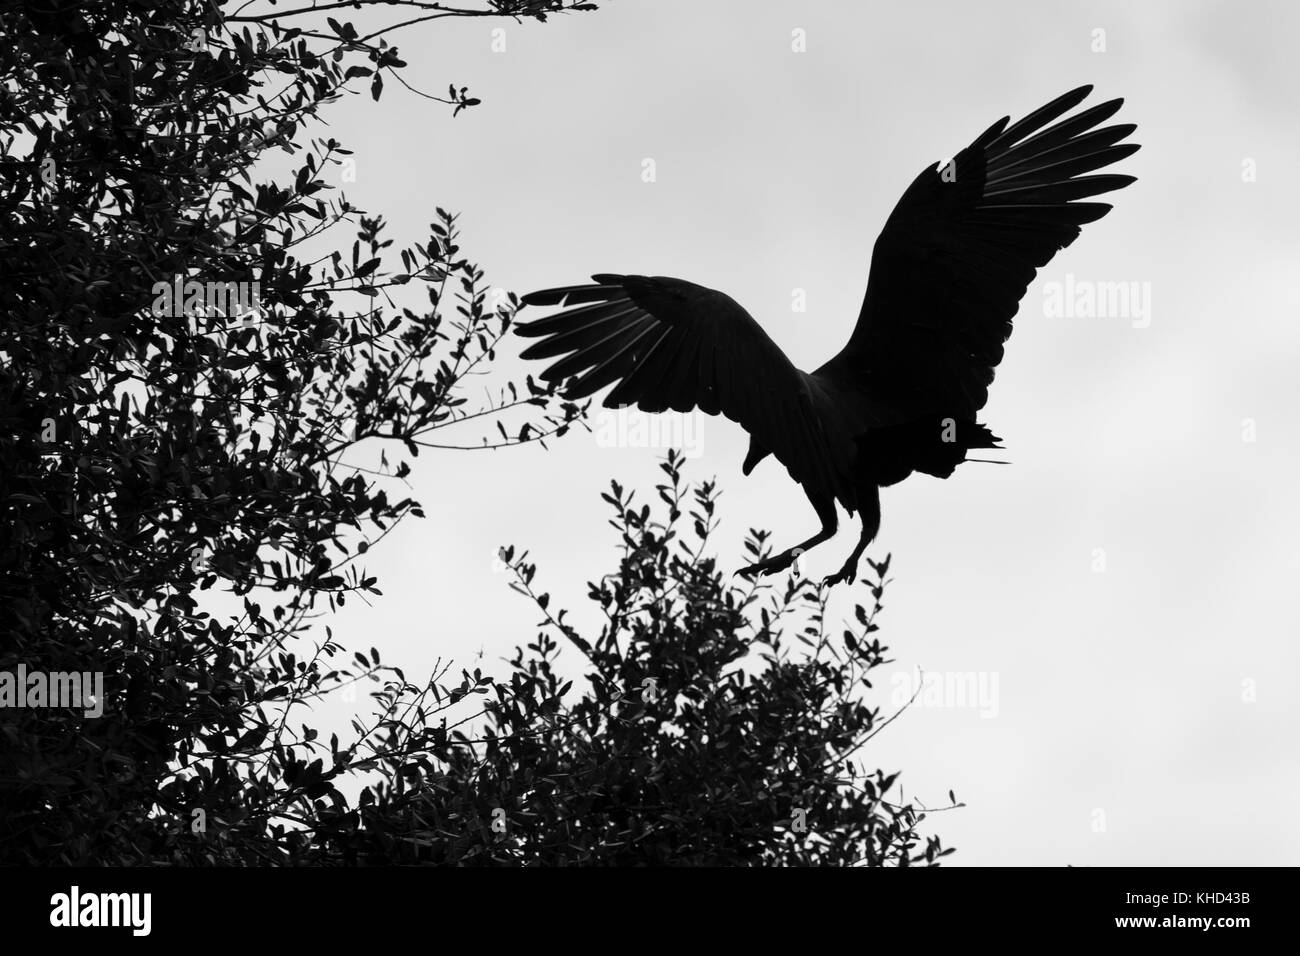 Silhouette de vulture landing in tree Banque D'Images